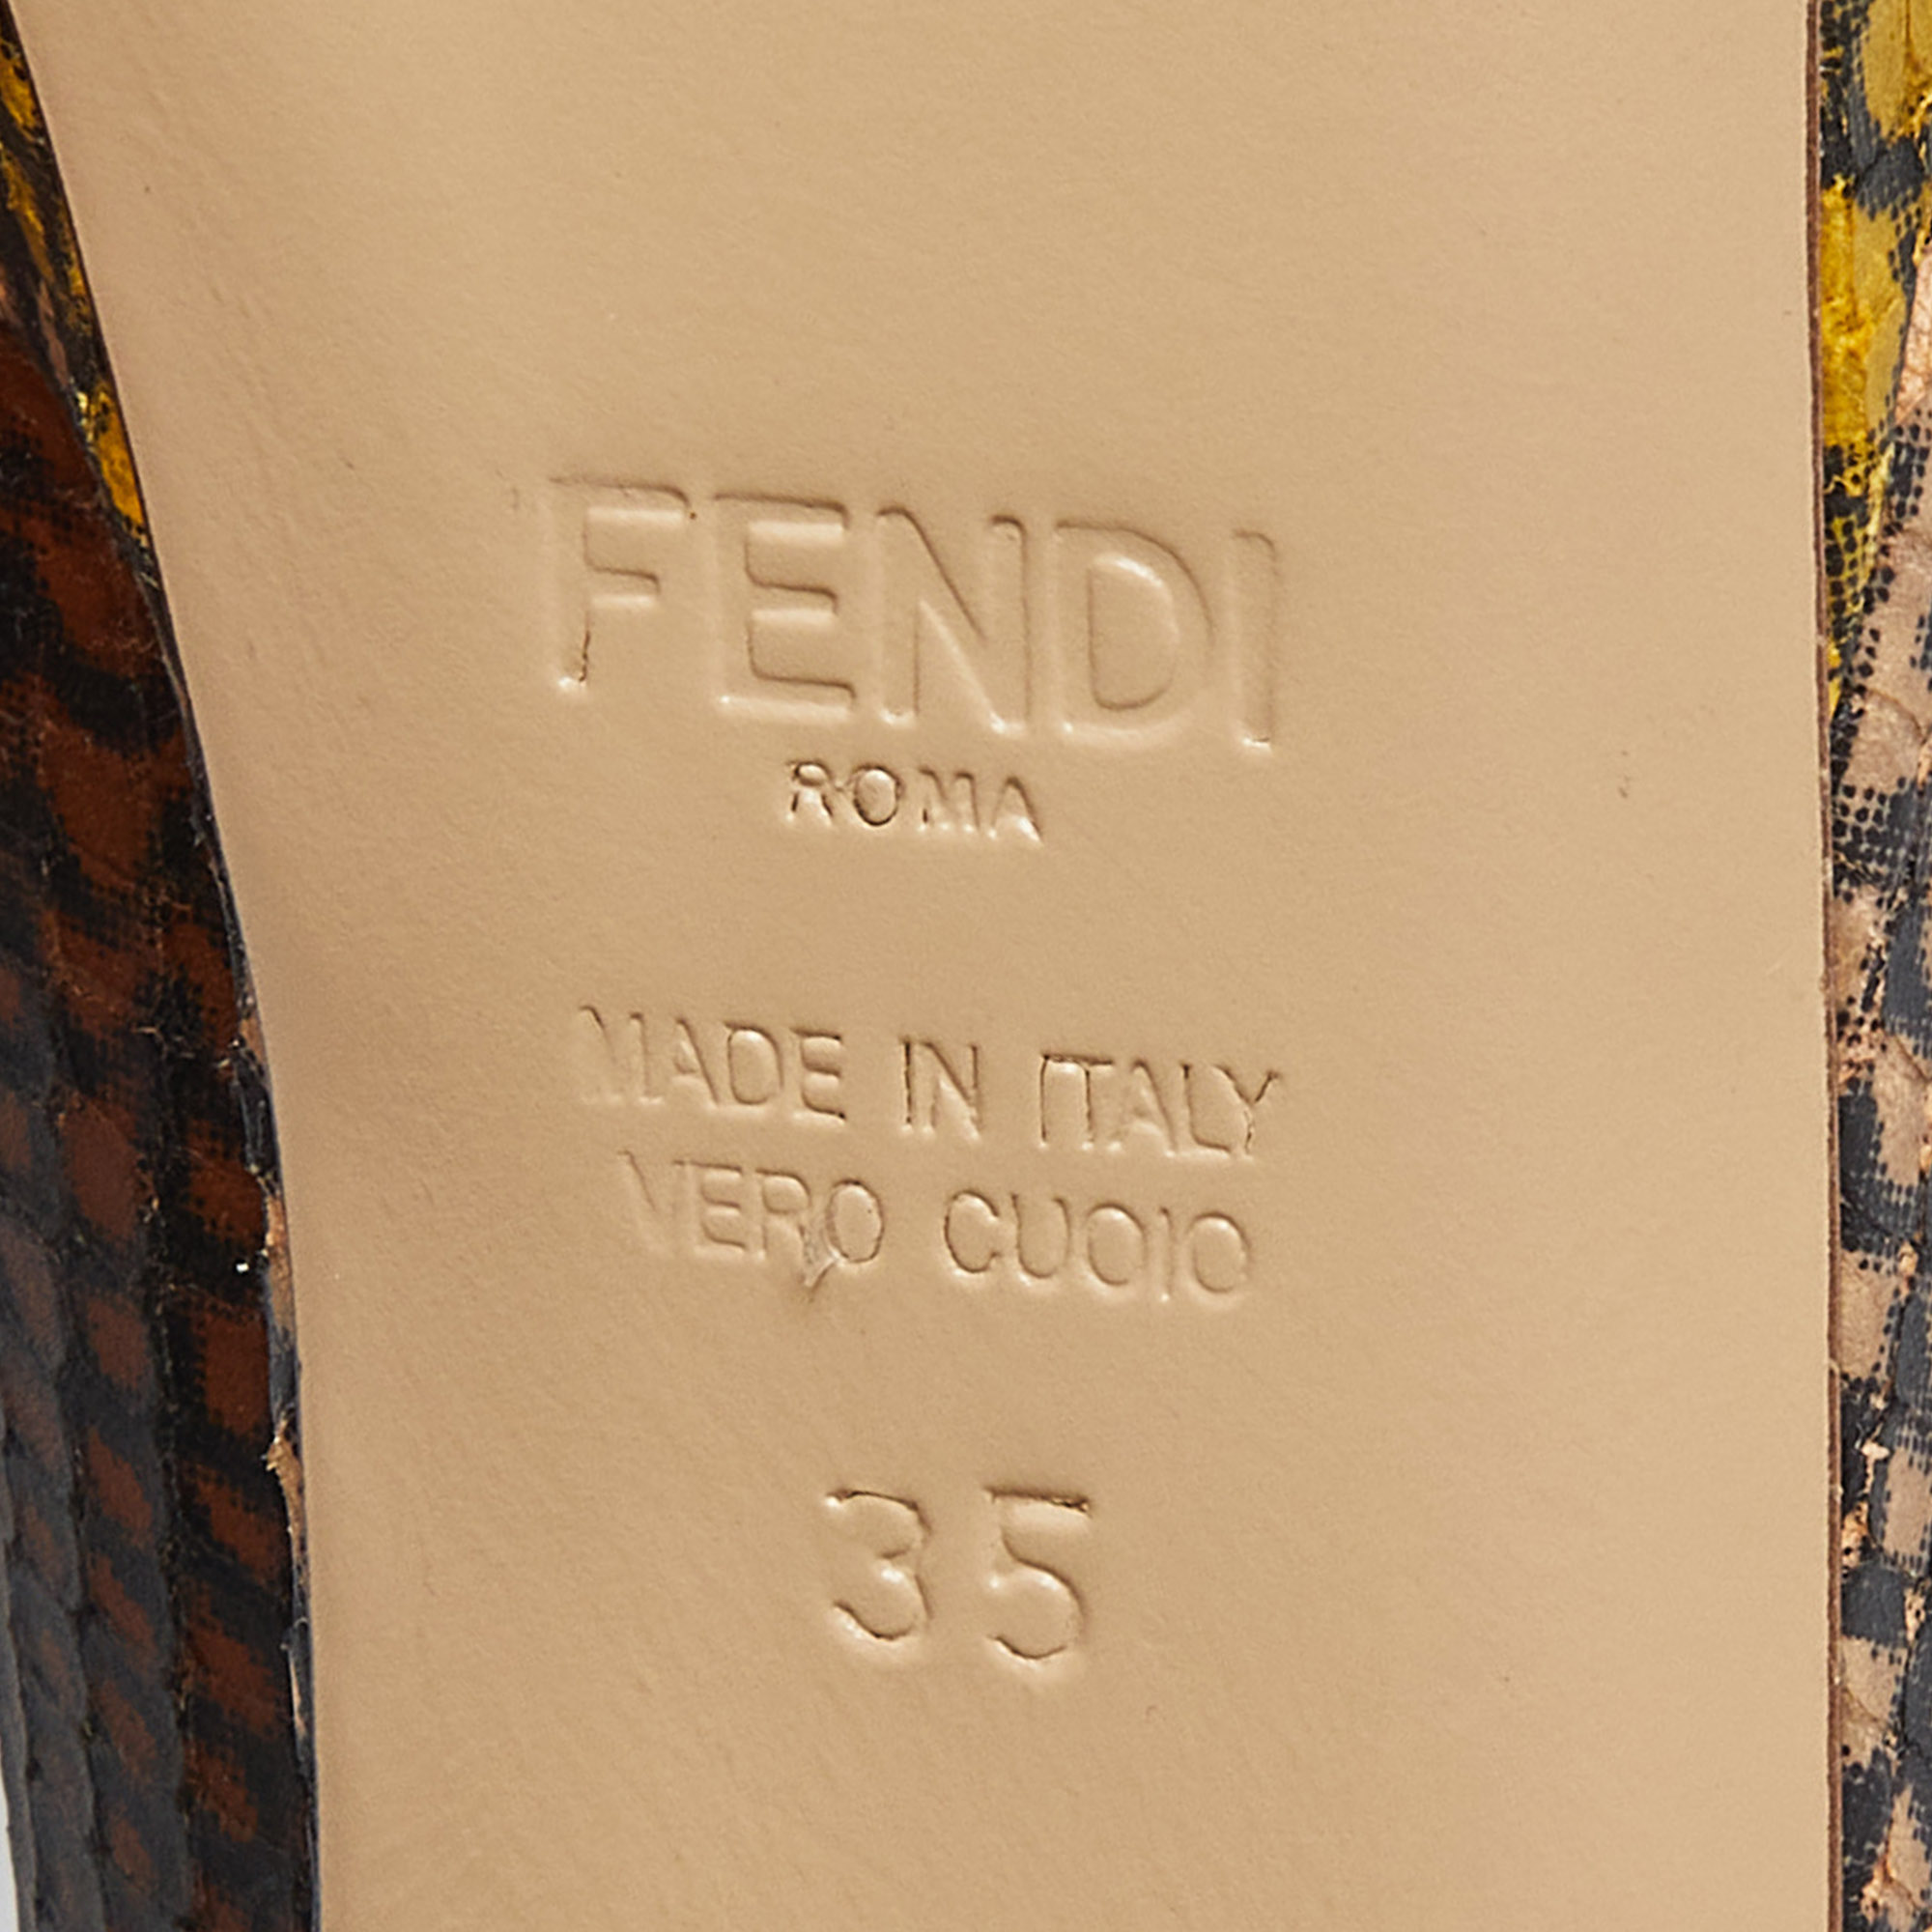 Fendi Multicolor Python Embossed Leather Peep Toe Platform Pumps Size 35